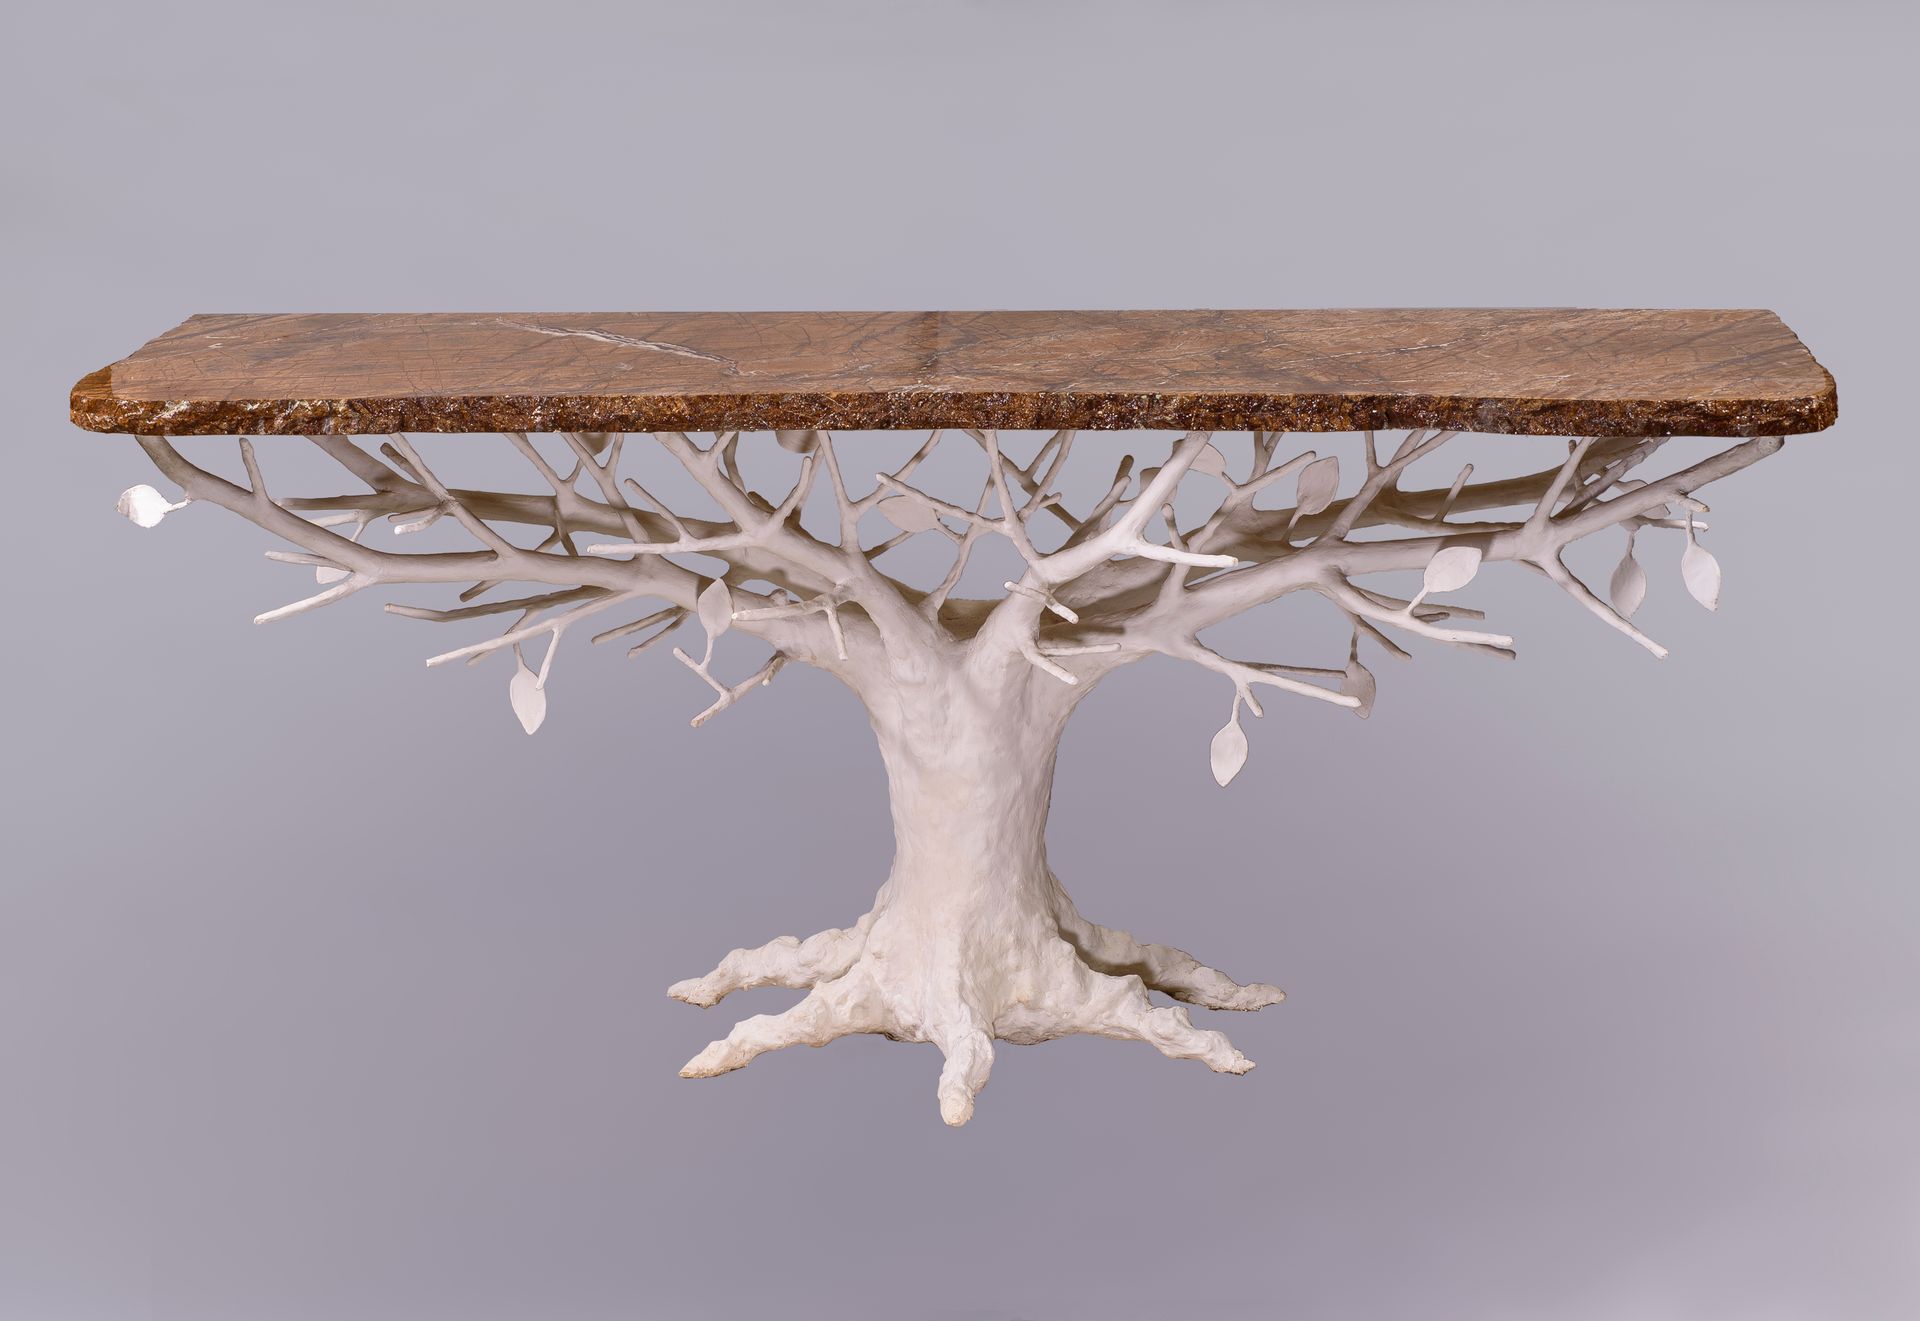 Null 亚历山大-LOGÉ（生于1977年）控制台树

用白色石膏覆盖的锻铁 大理石顶部

高93、宽205、深64厘米，顶部有修复措施